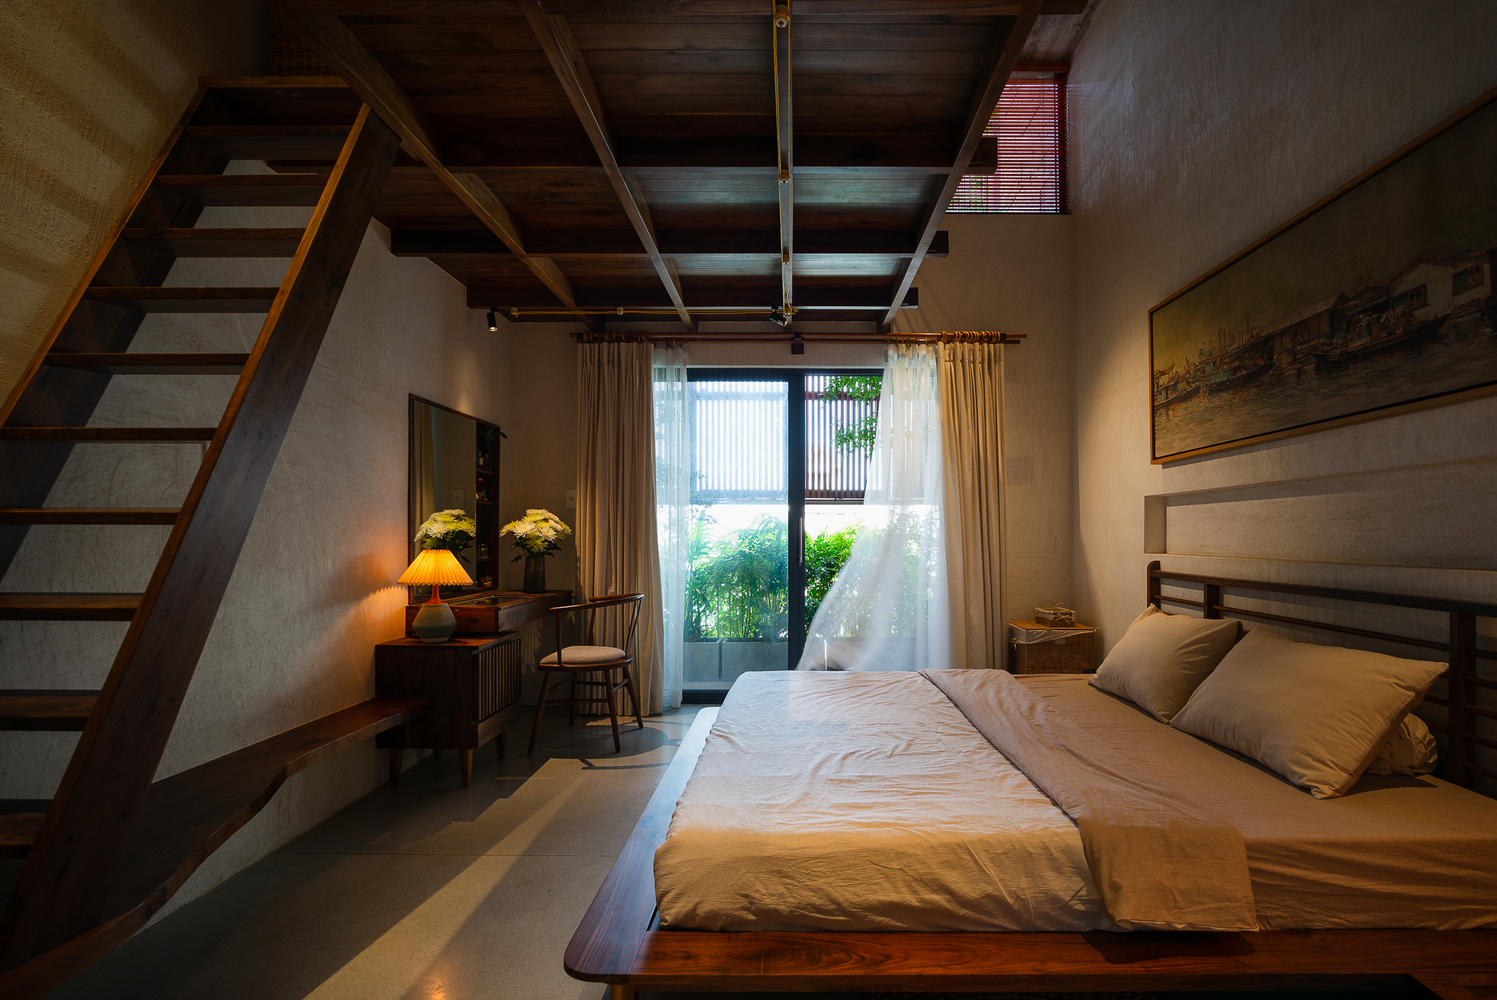 Phòng ngủ thiết kế tối giản, thoáng sáng, nhìn ra khoảng xanh dịu mát.